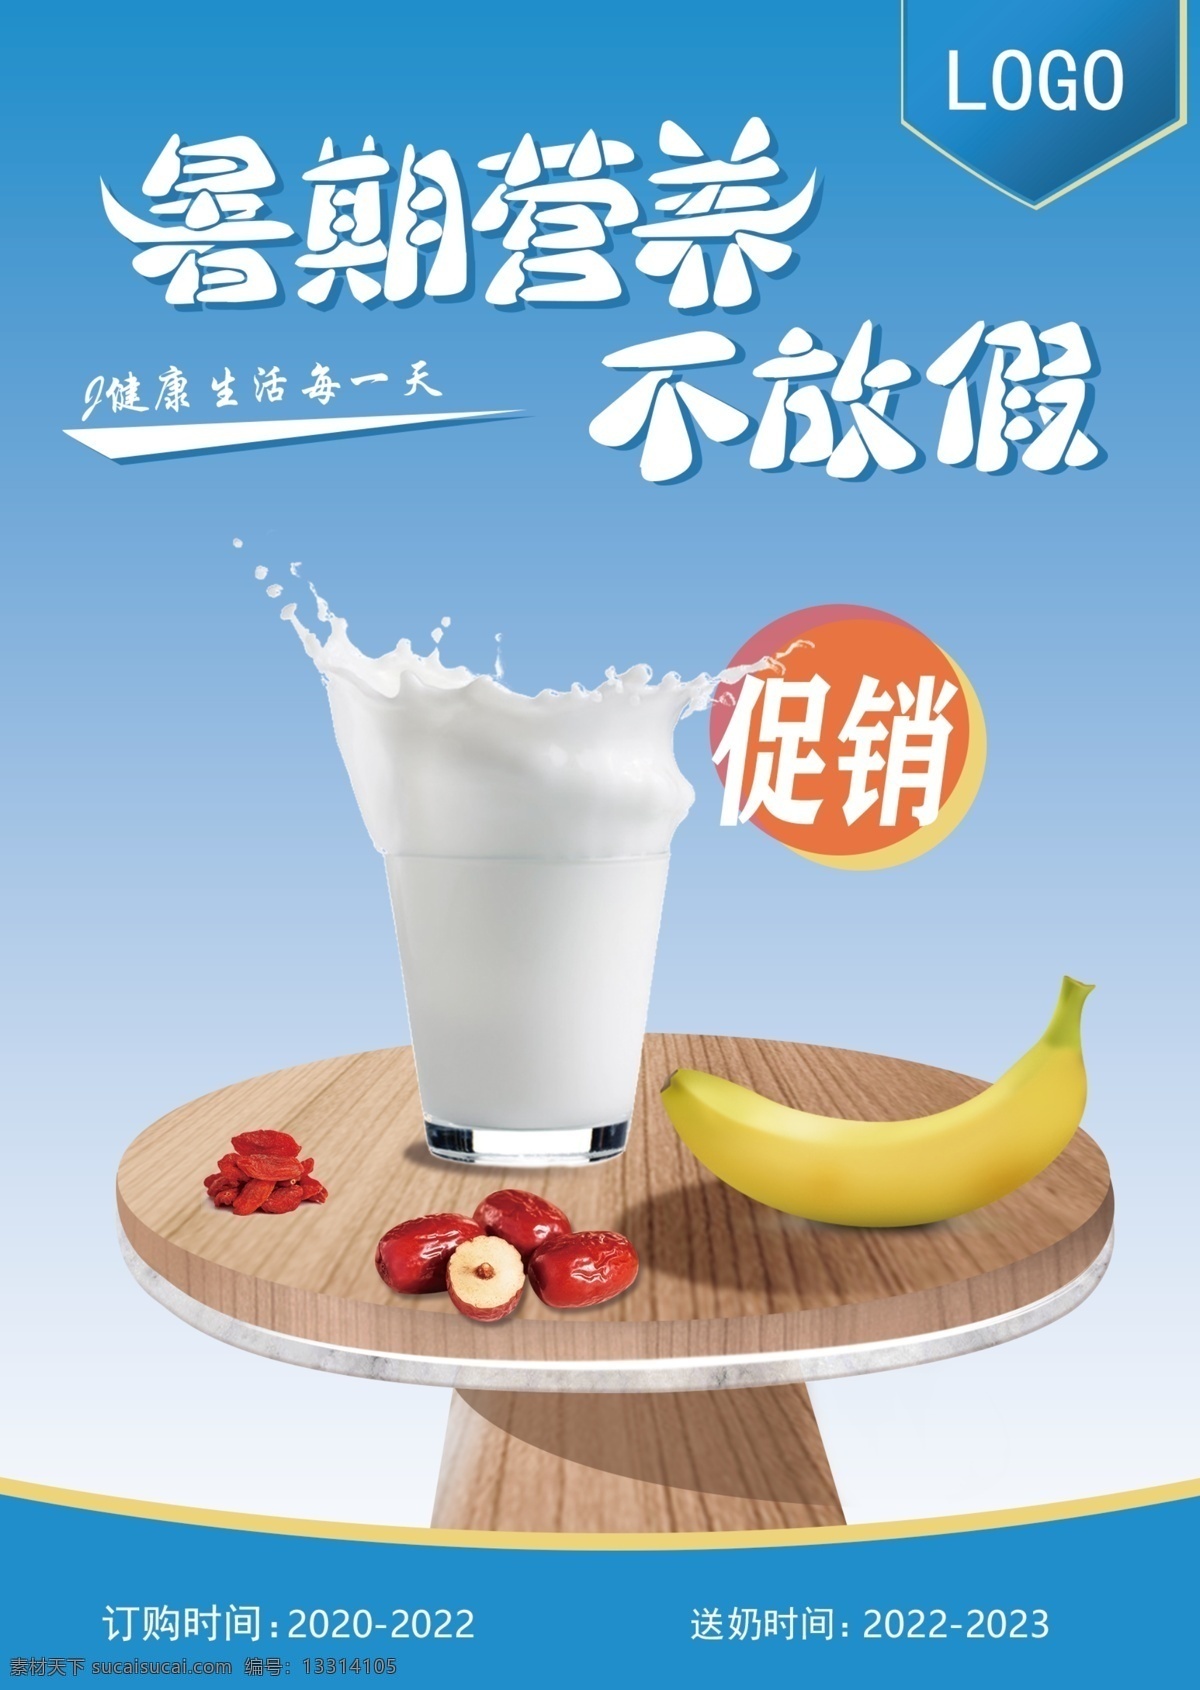 香蕉 草莓 牛 i 奶 宣传单 页 牛奶素材 香蕉草莓牛奶 鲜牛奶 牛奶促销单页 暑期单页 促销单页 dm宣传单